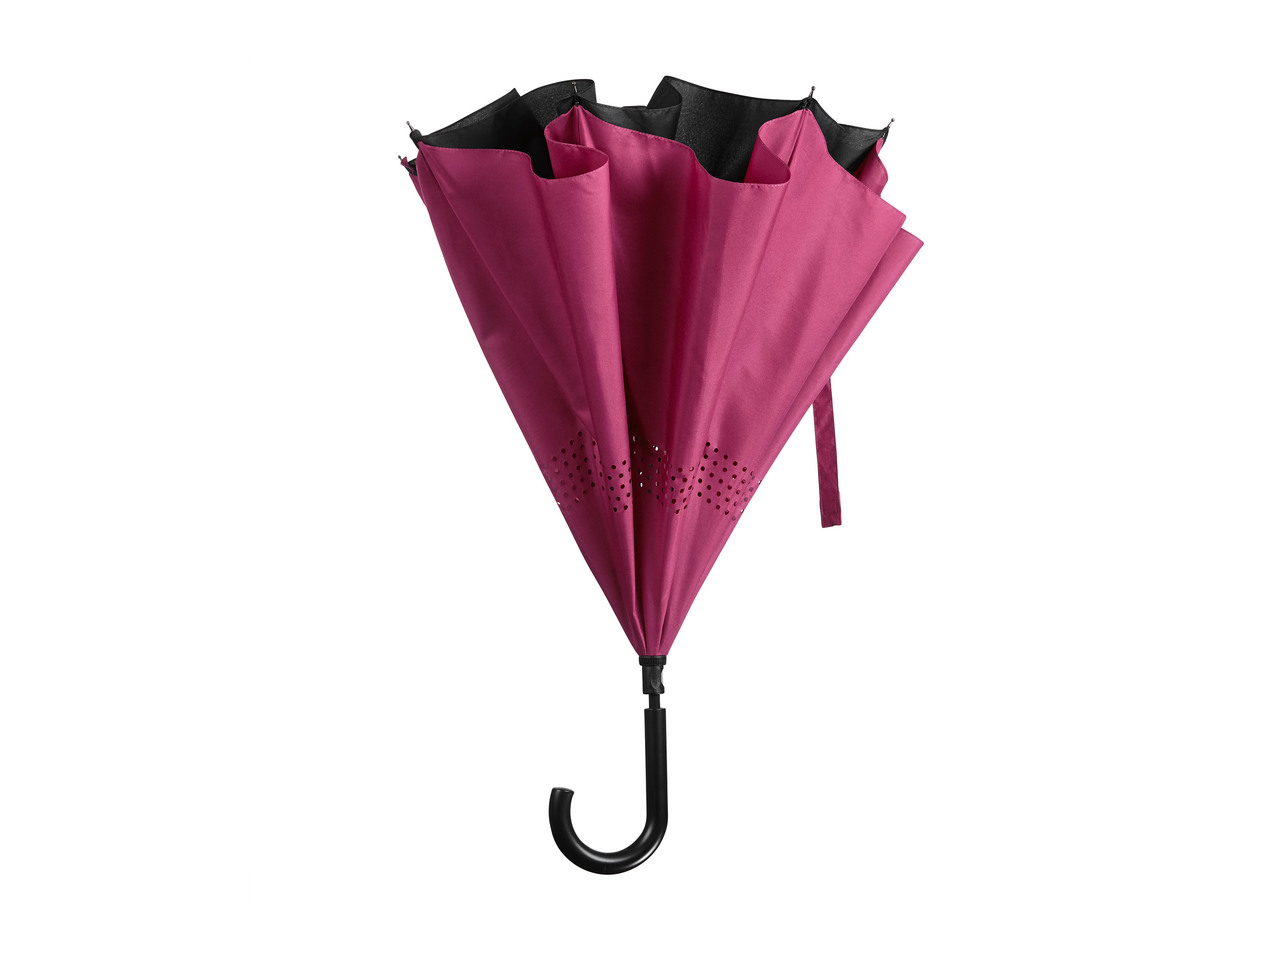 TOPMOVE(R) Guarda-chuva com Fecho Invertido